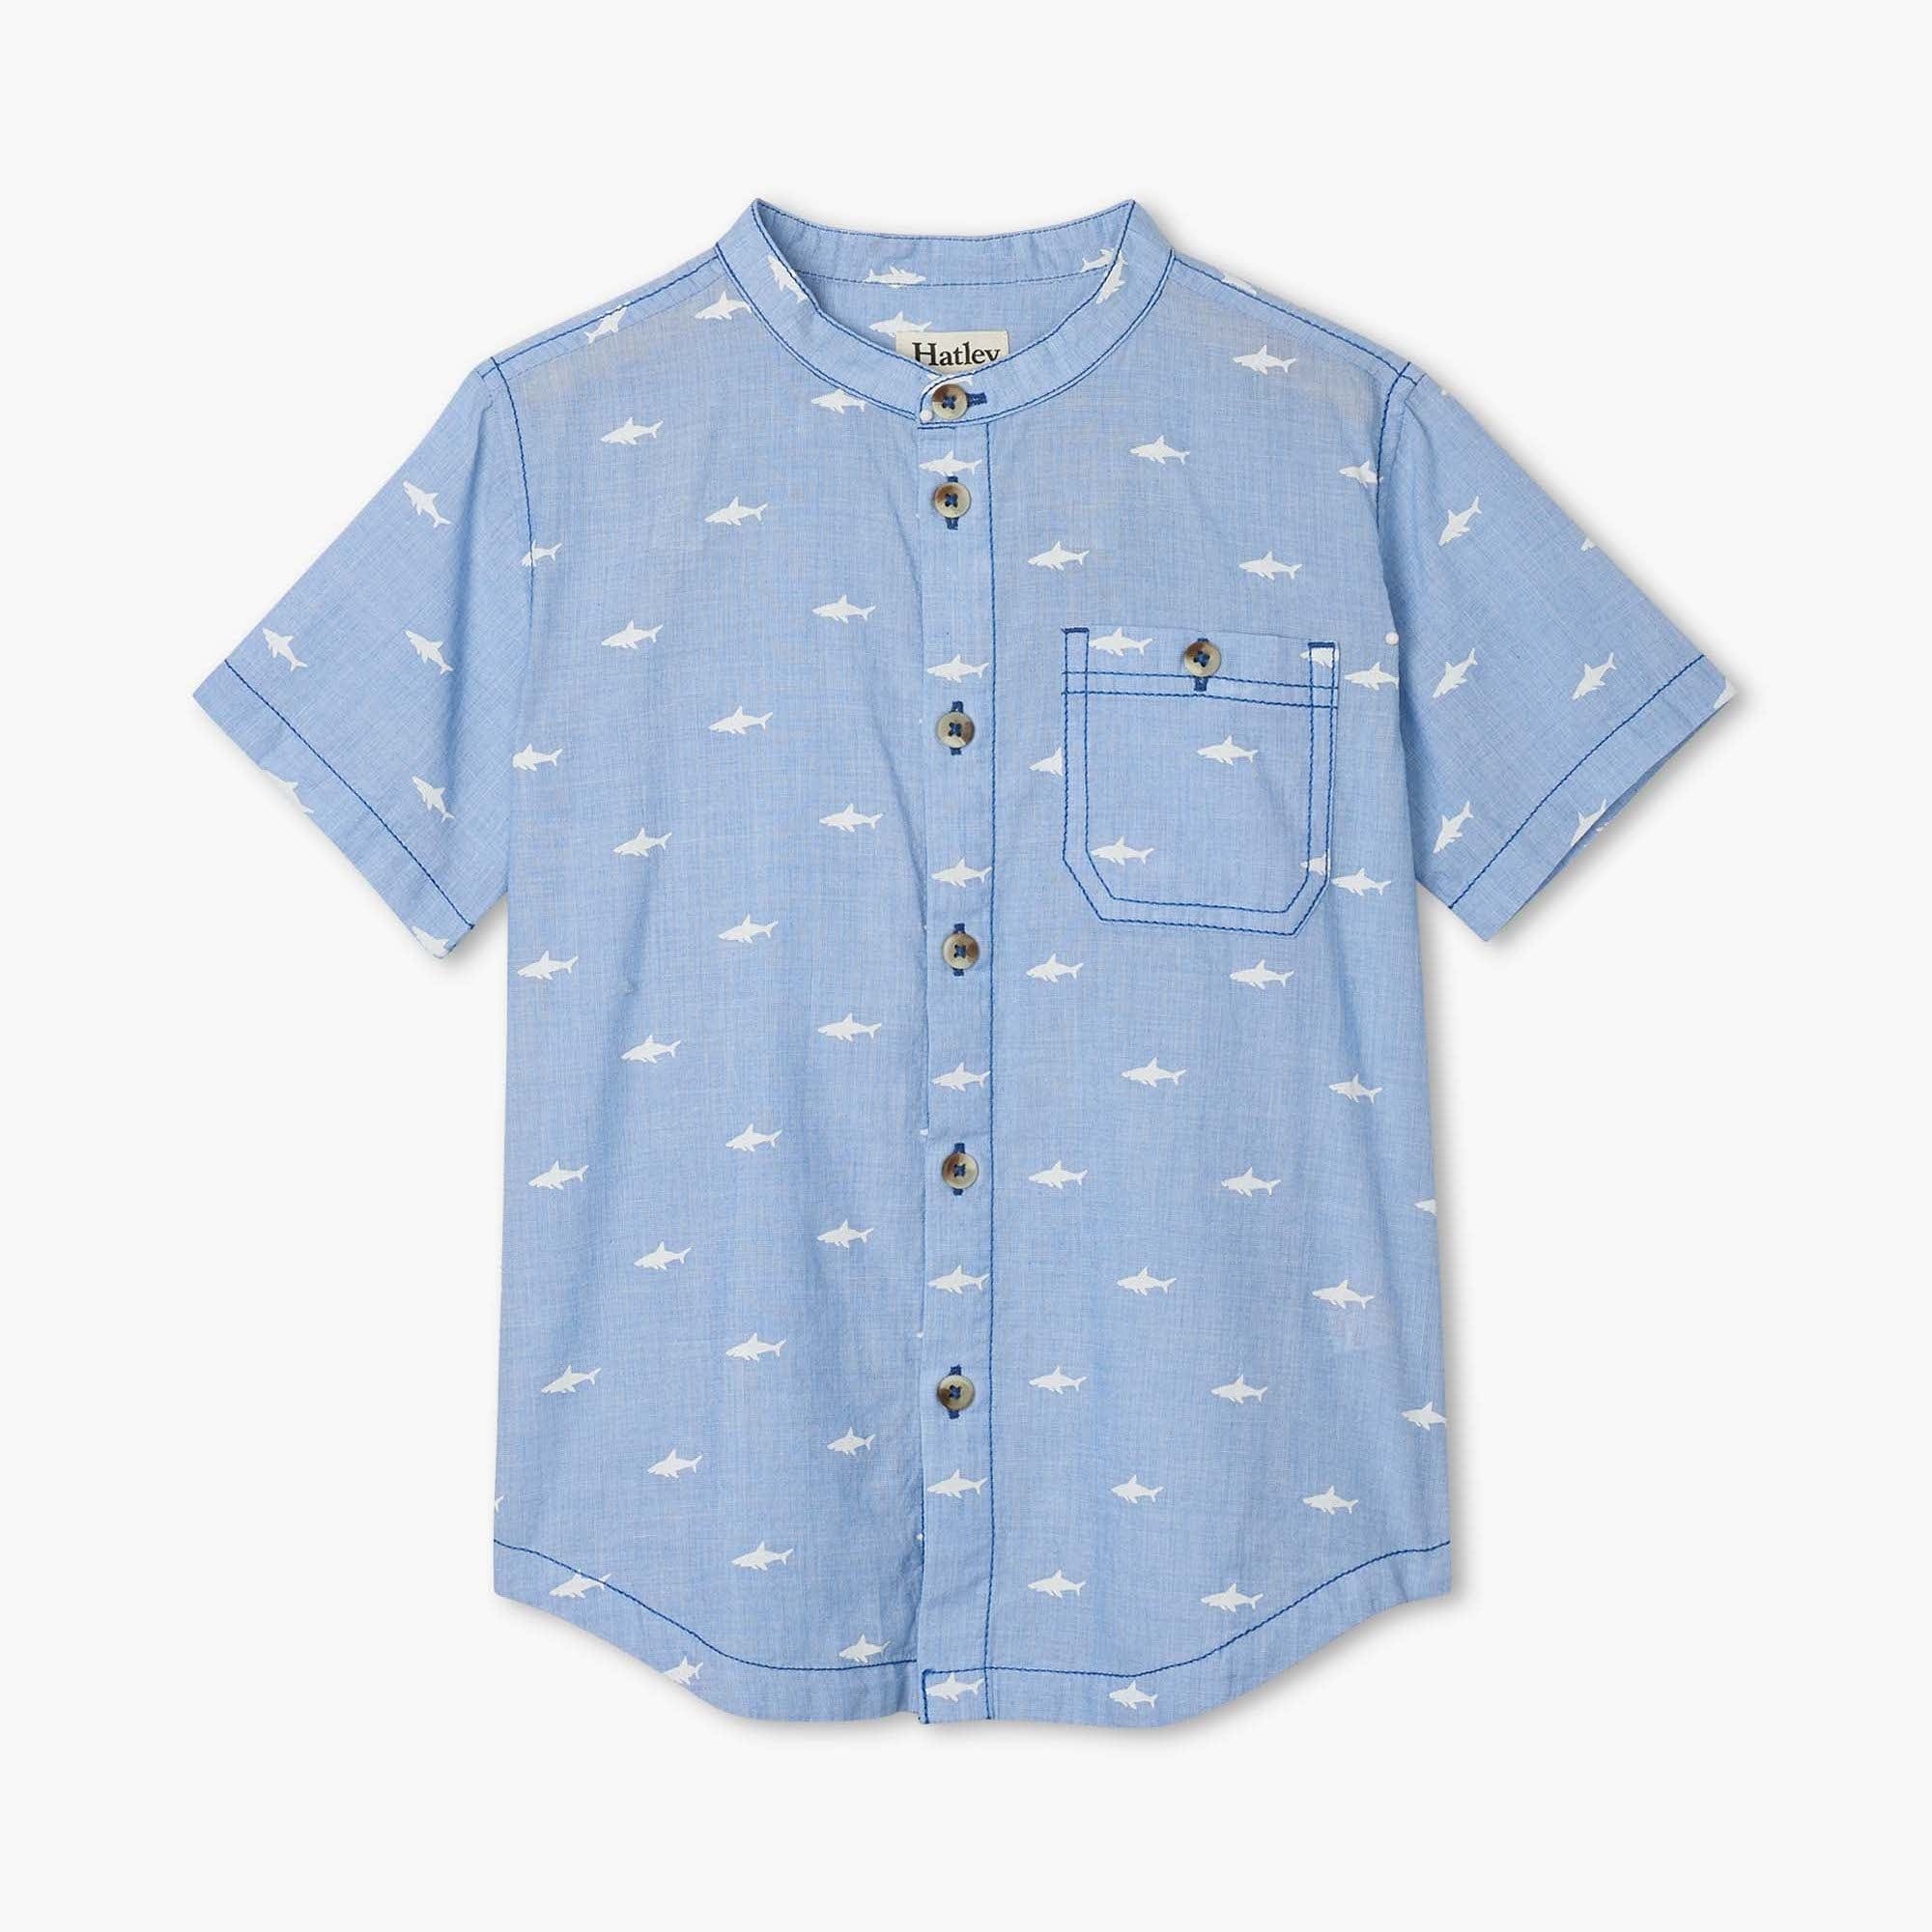 Hatley ’Shark Patrol’ Shirt - Shirt